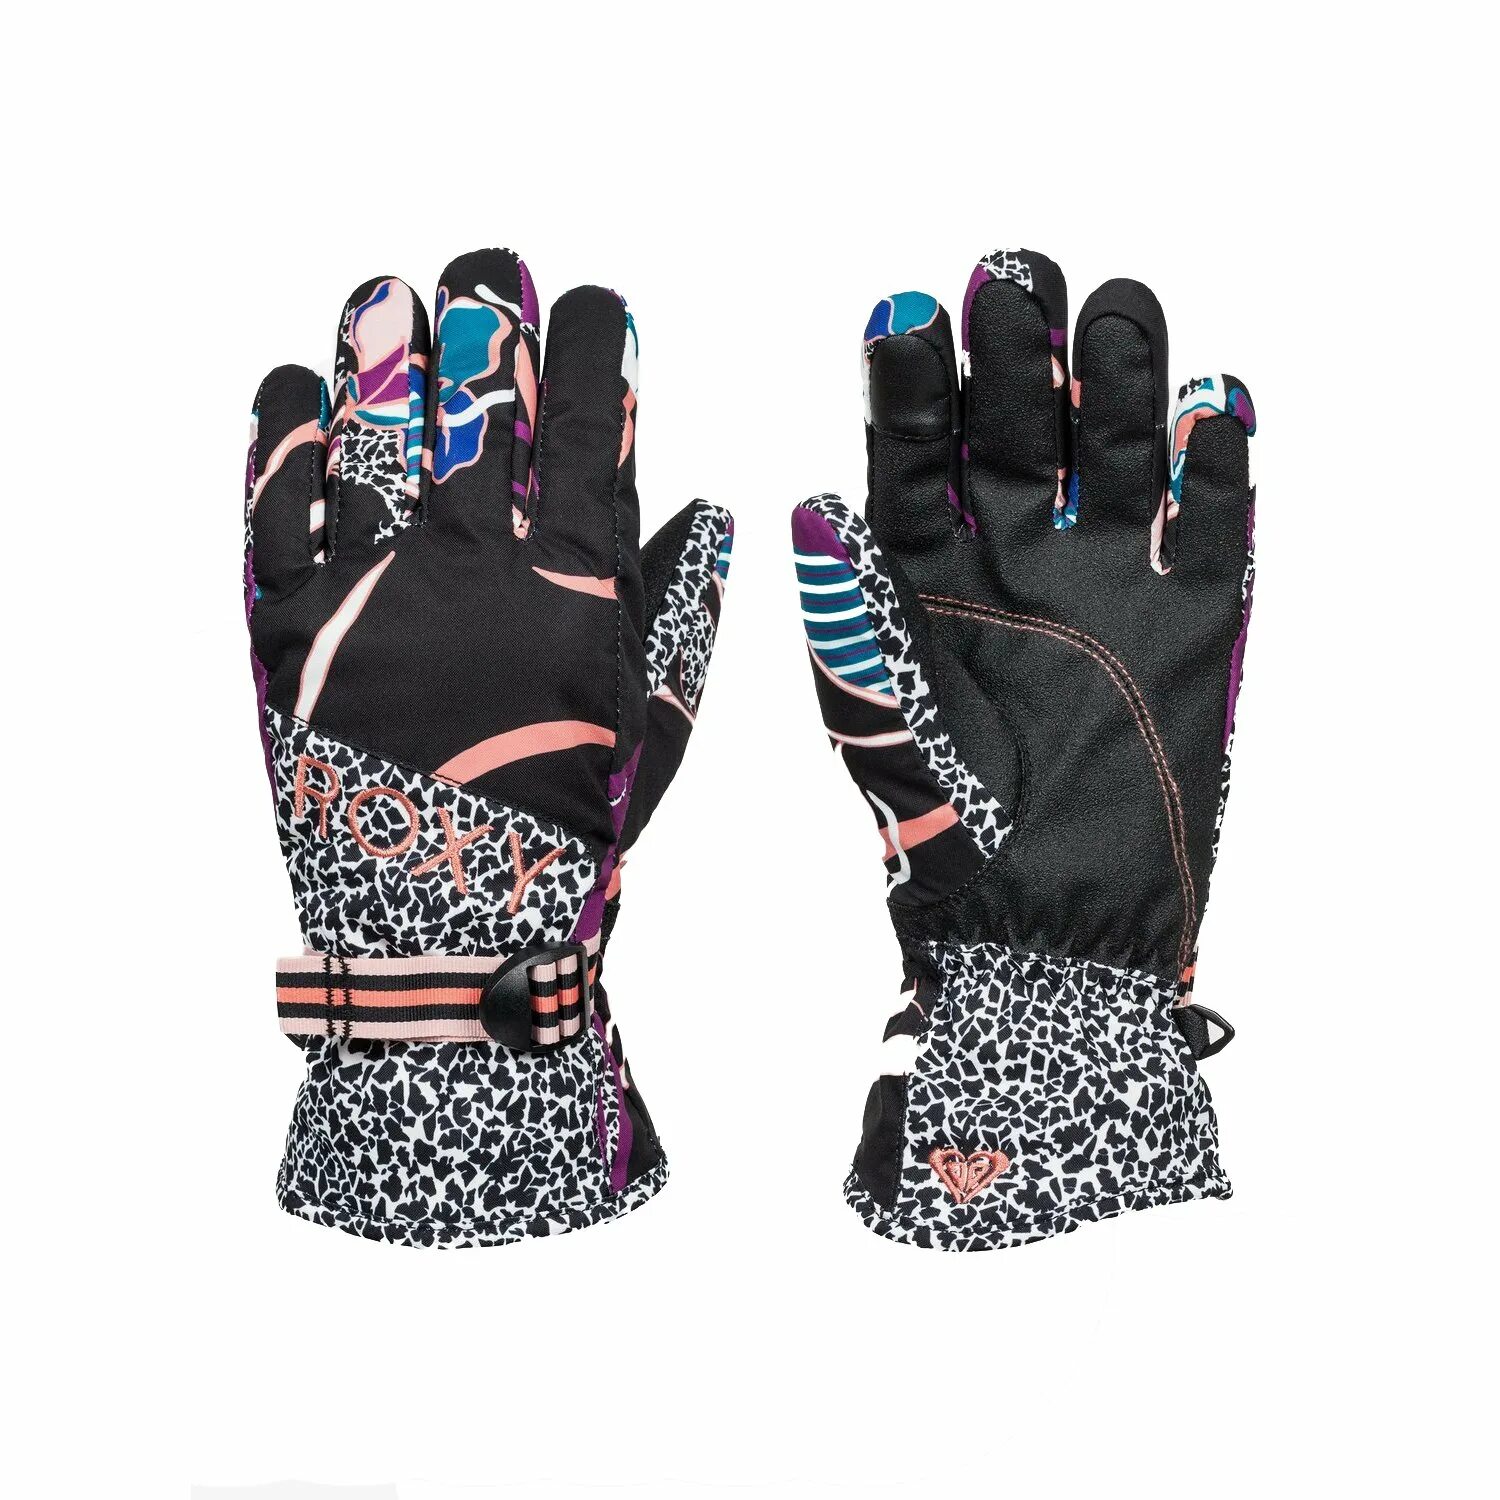 Перчатки Roxy. Перчатки Roxy женские горнолыжные. Roxy перчатки сноубордические женские. Roxy Hydrosmart перчатки.